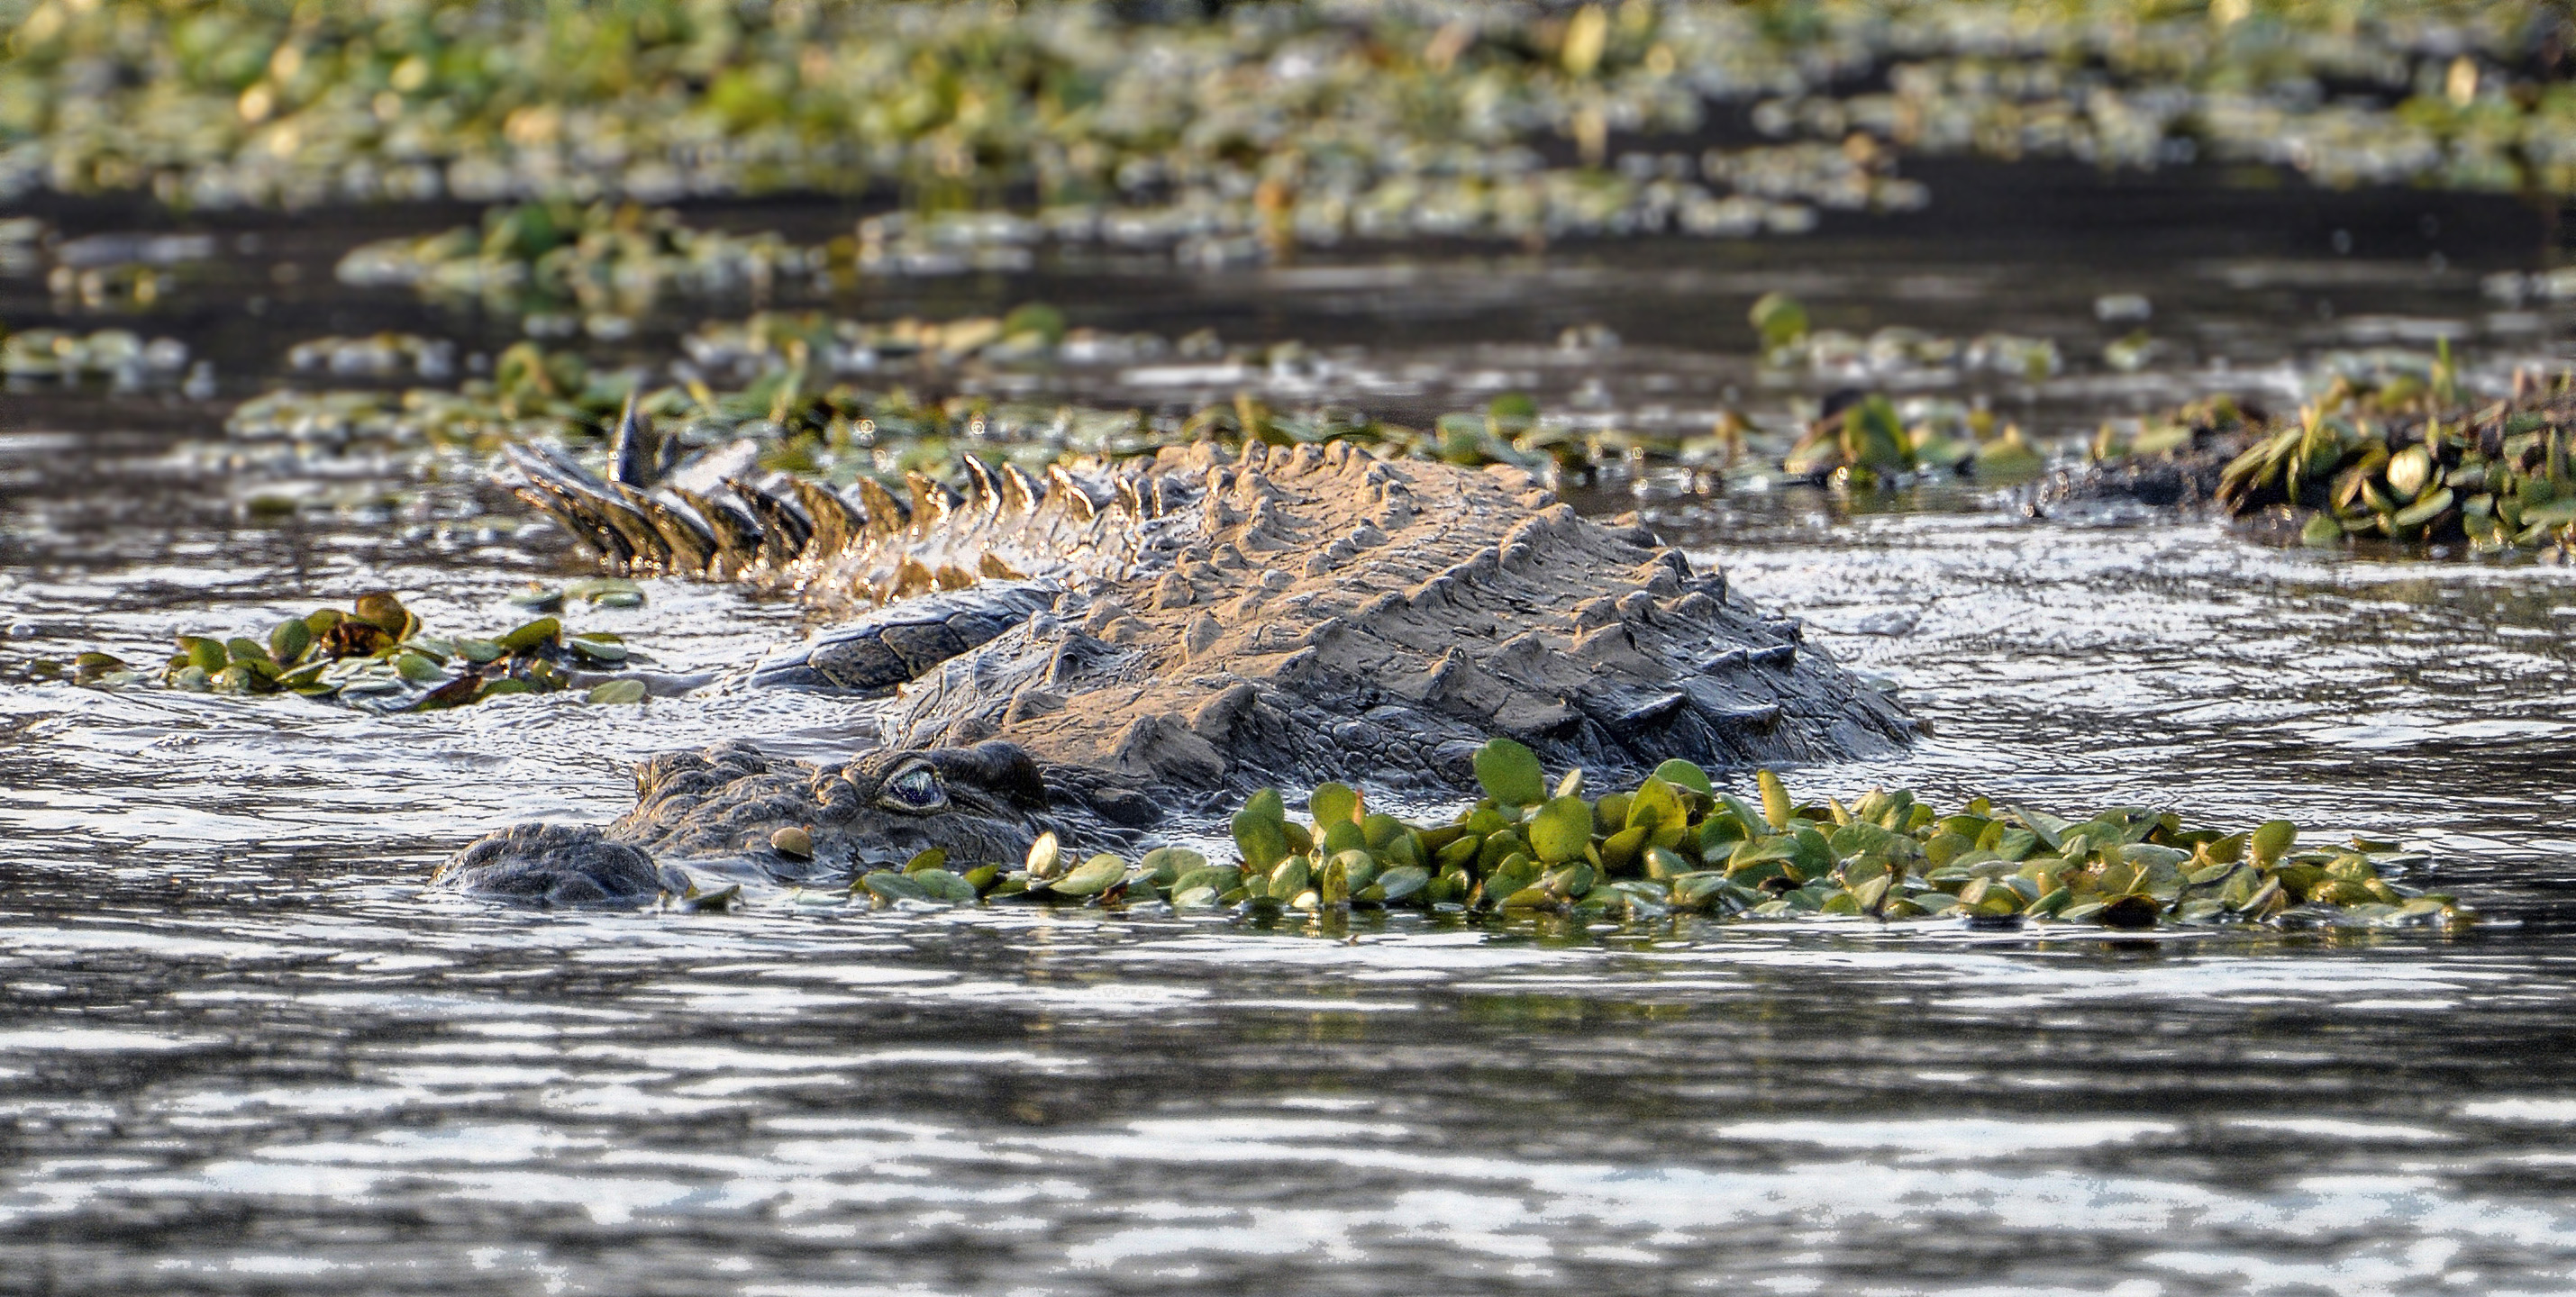 Zambezi River Crocodile | Shutterbug